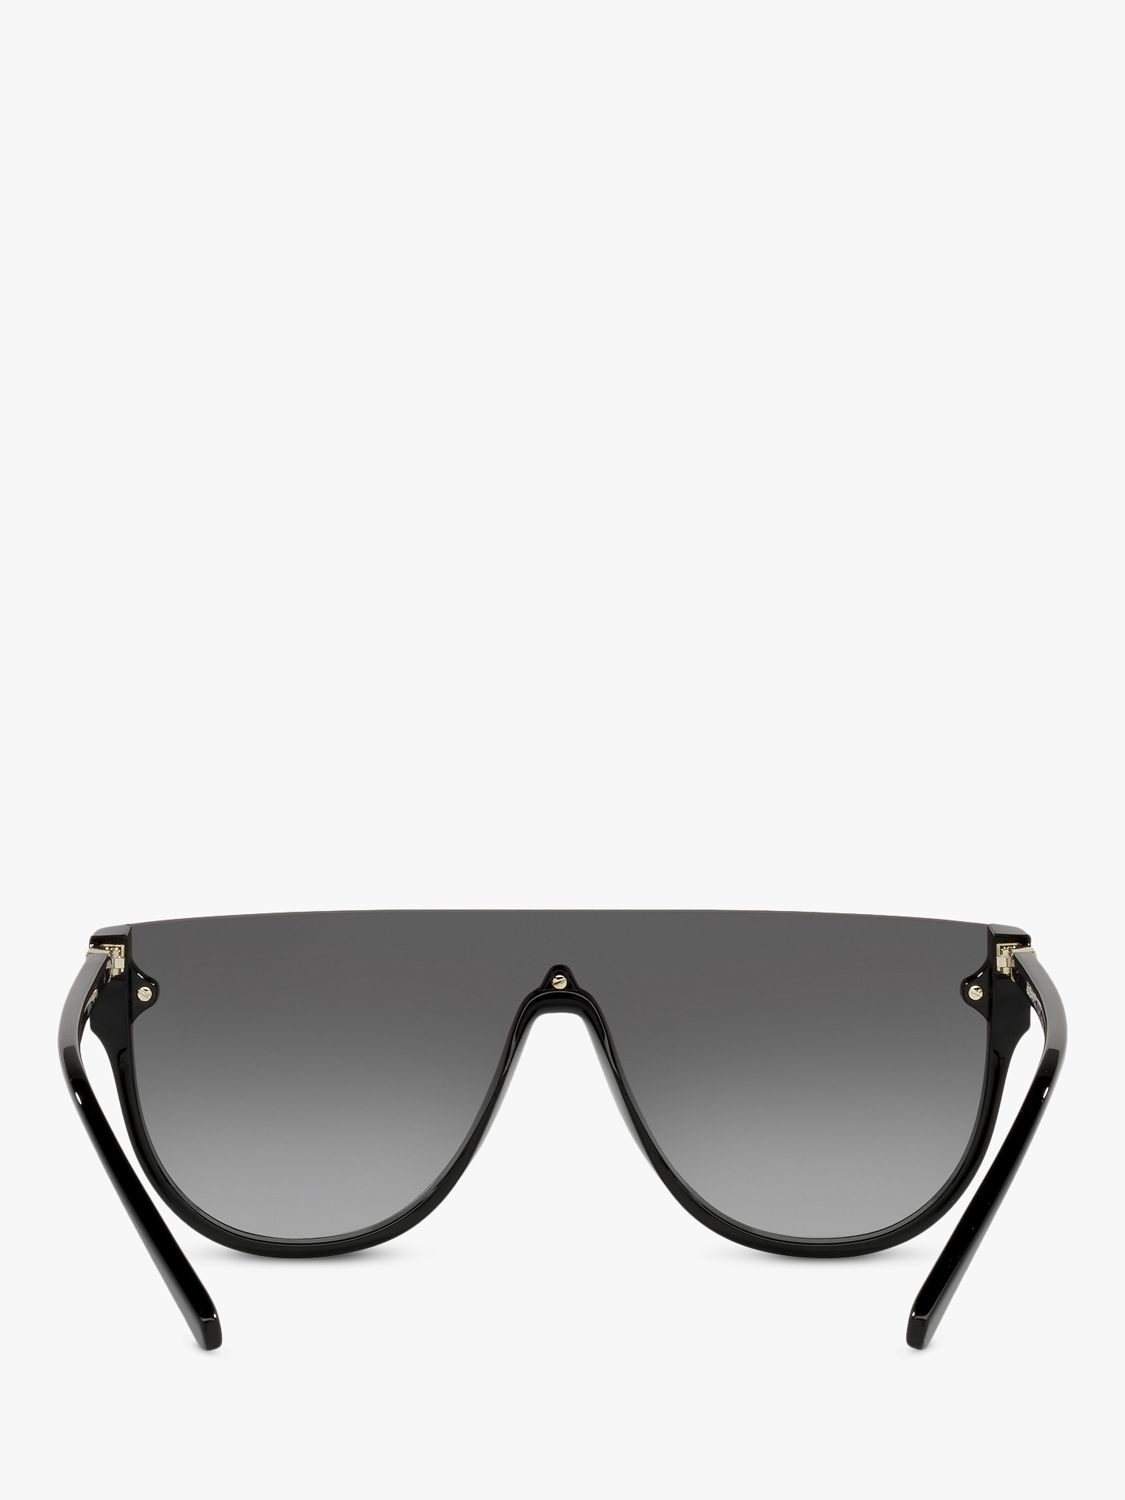 Buy Michael Kors MK2151 Women's Aspen Irregular Sunglasses Online at johnlewis.com